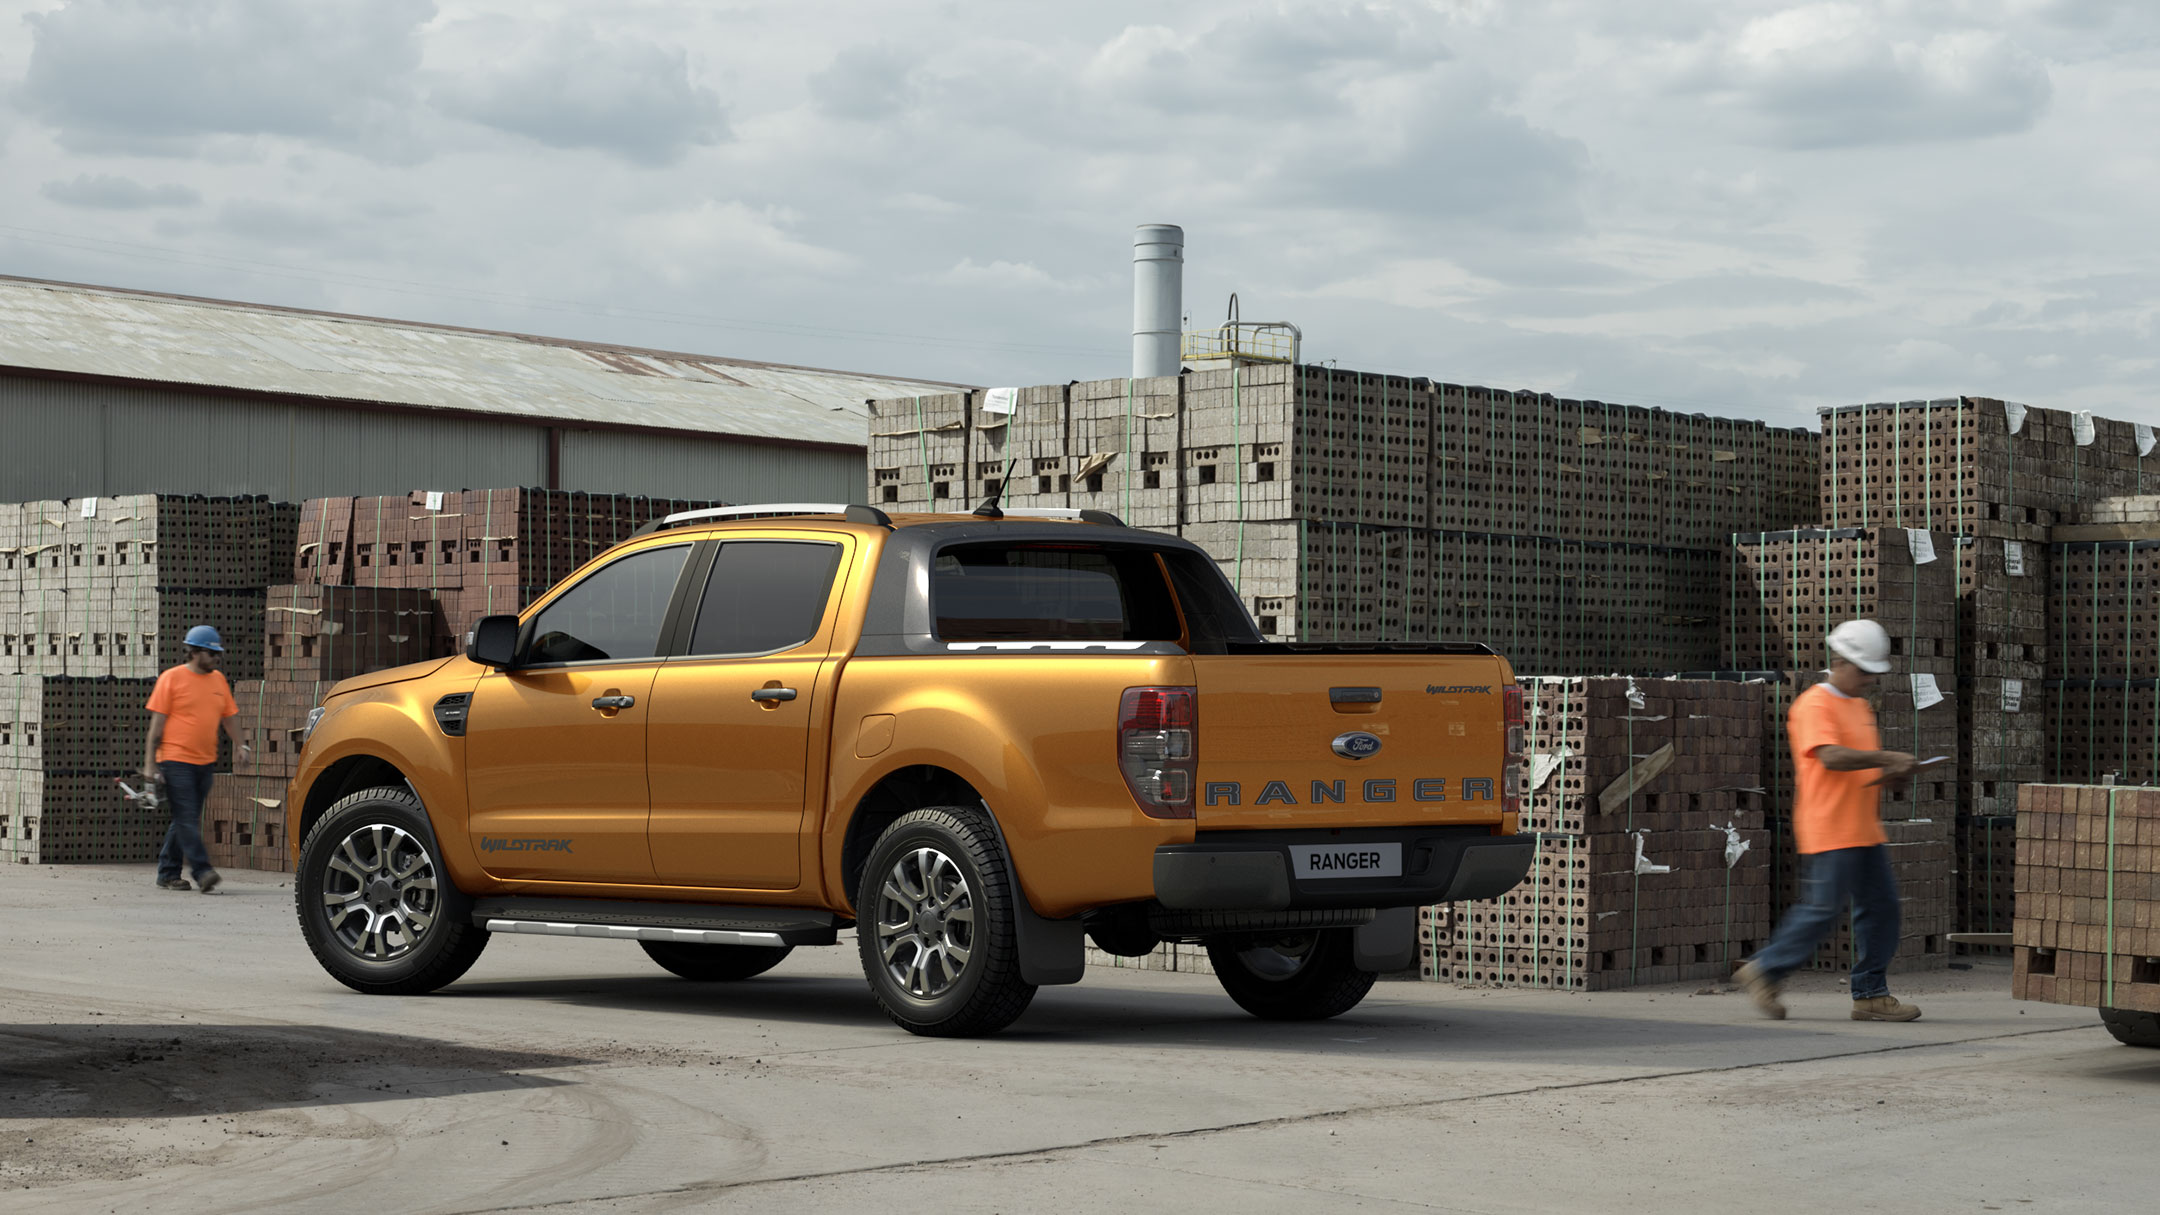 Ford Ranger couleur orange, vue arrière aux trois quarts, stationnant sur un chantier